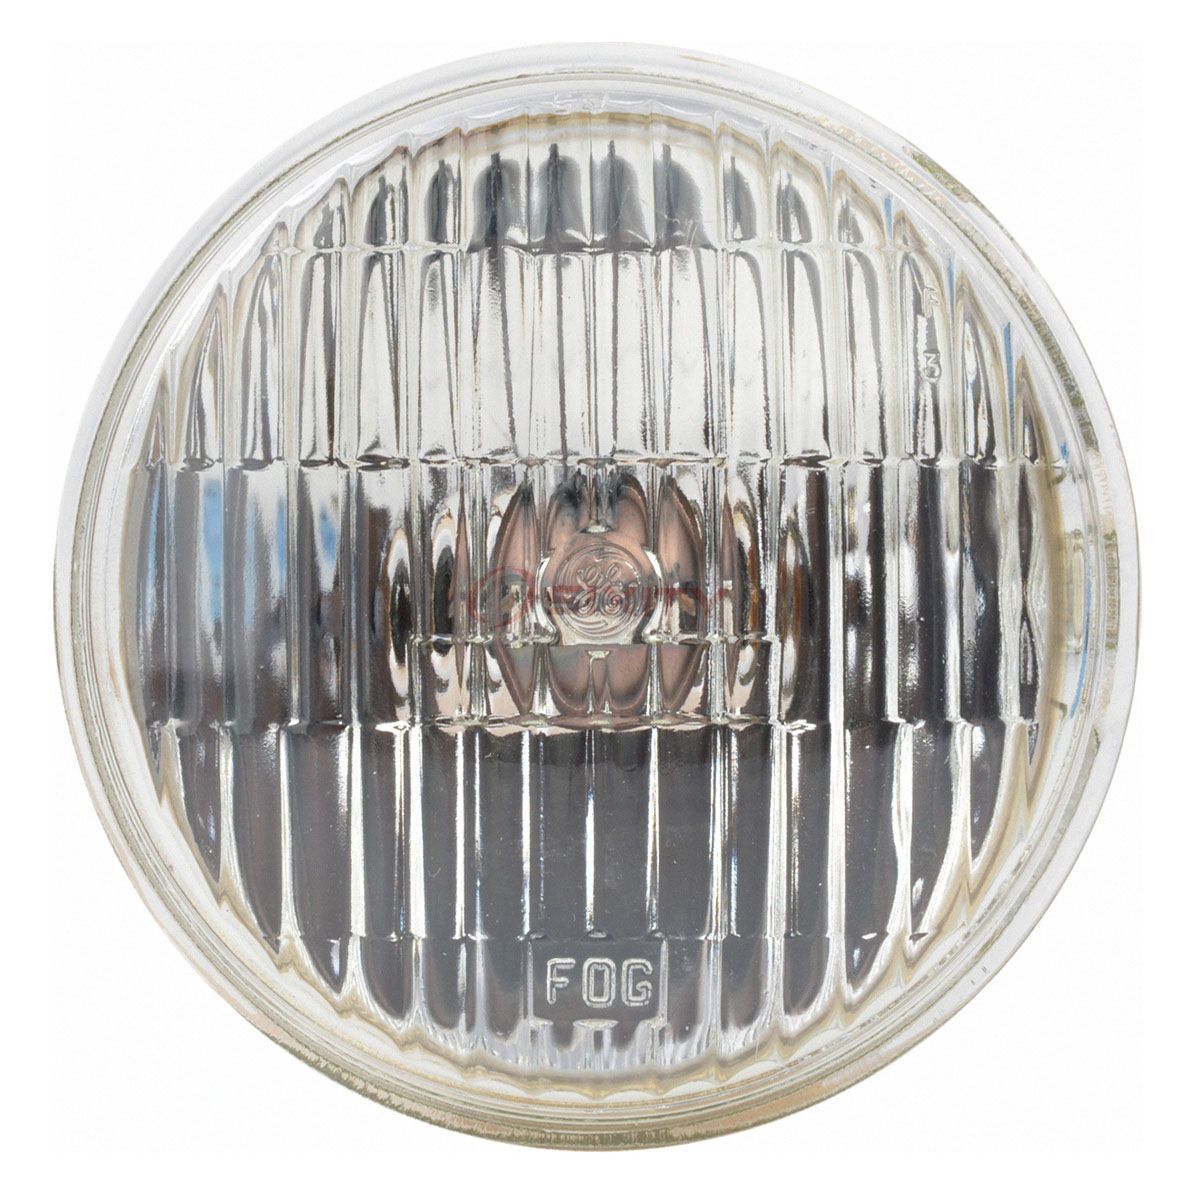 2209-GE Mopar 1970-71 Plymouth Cuda Road Lamp Bulb with "FOG" Lettering (Each)